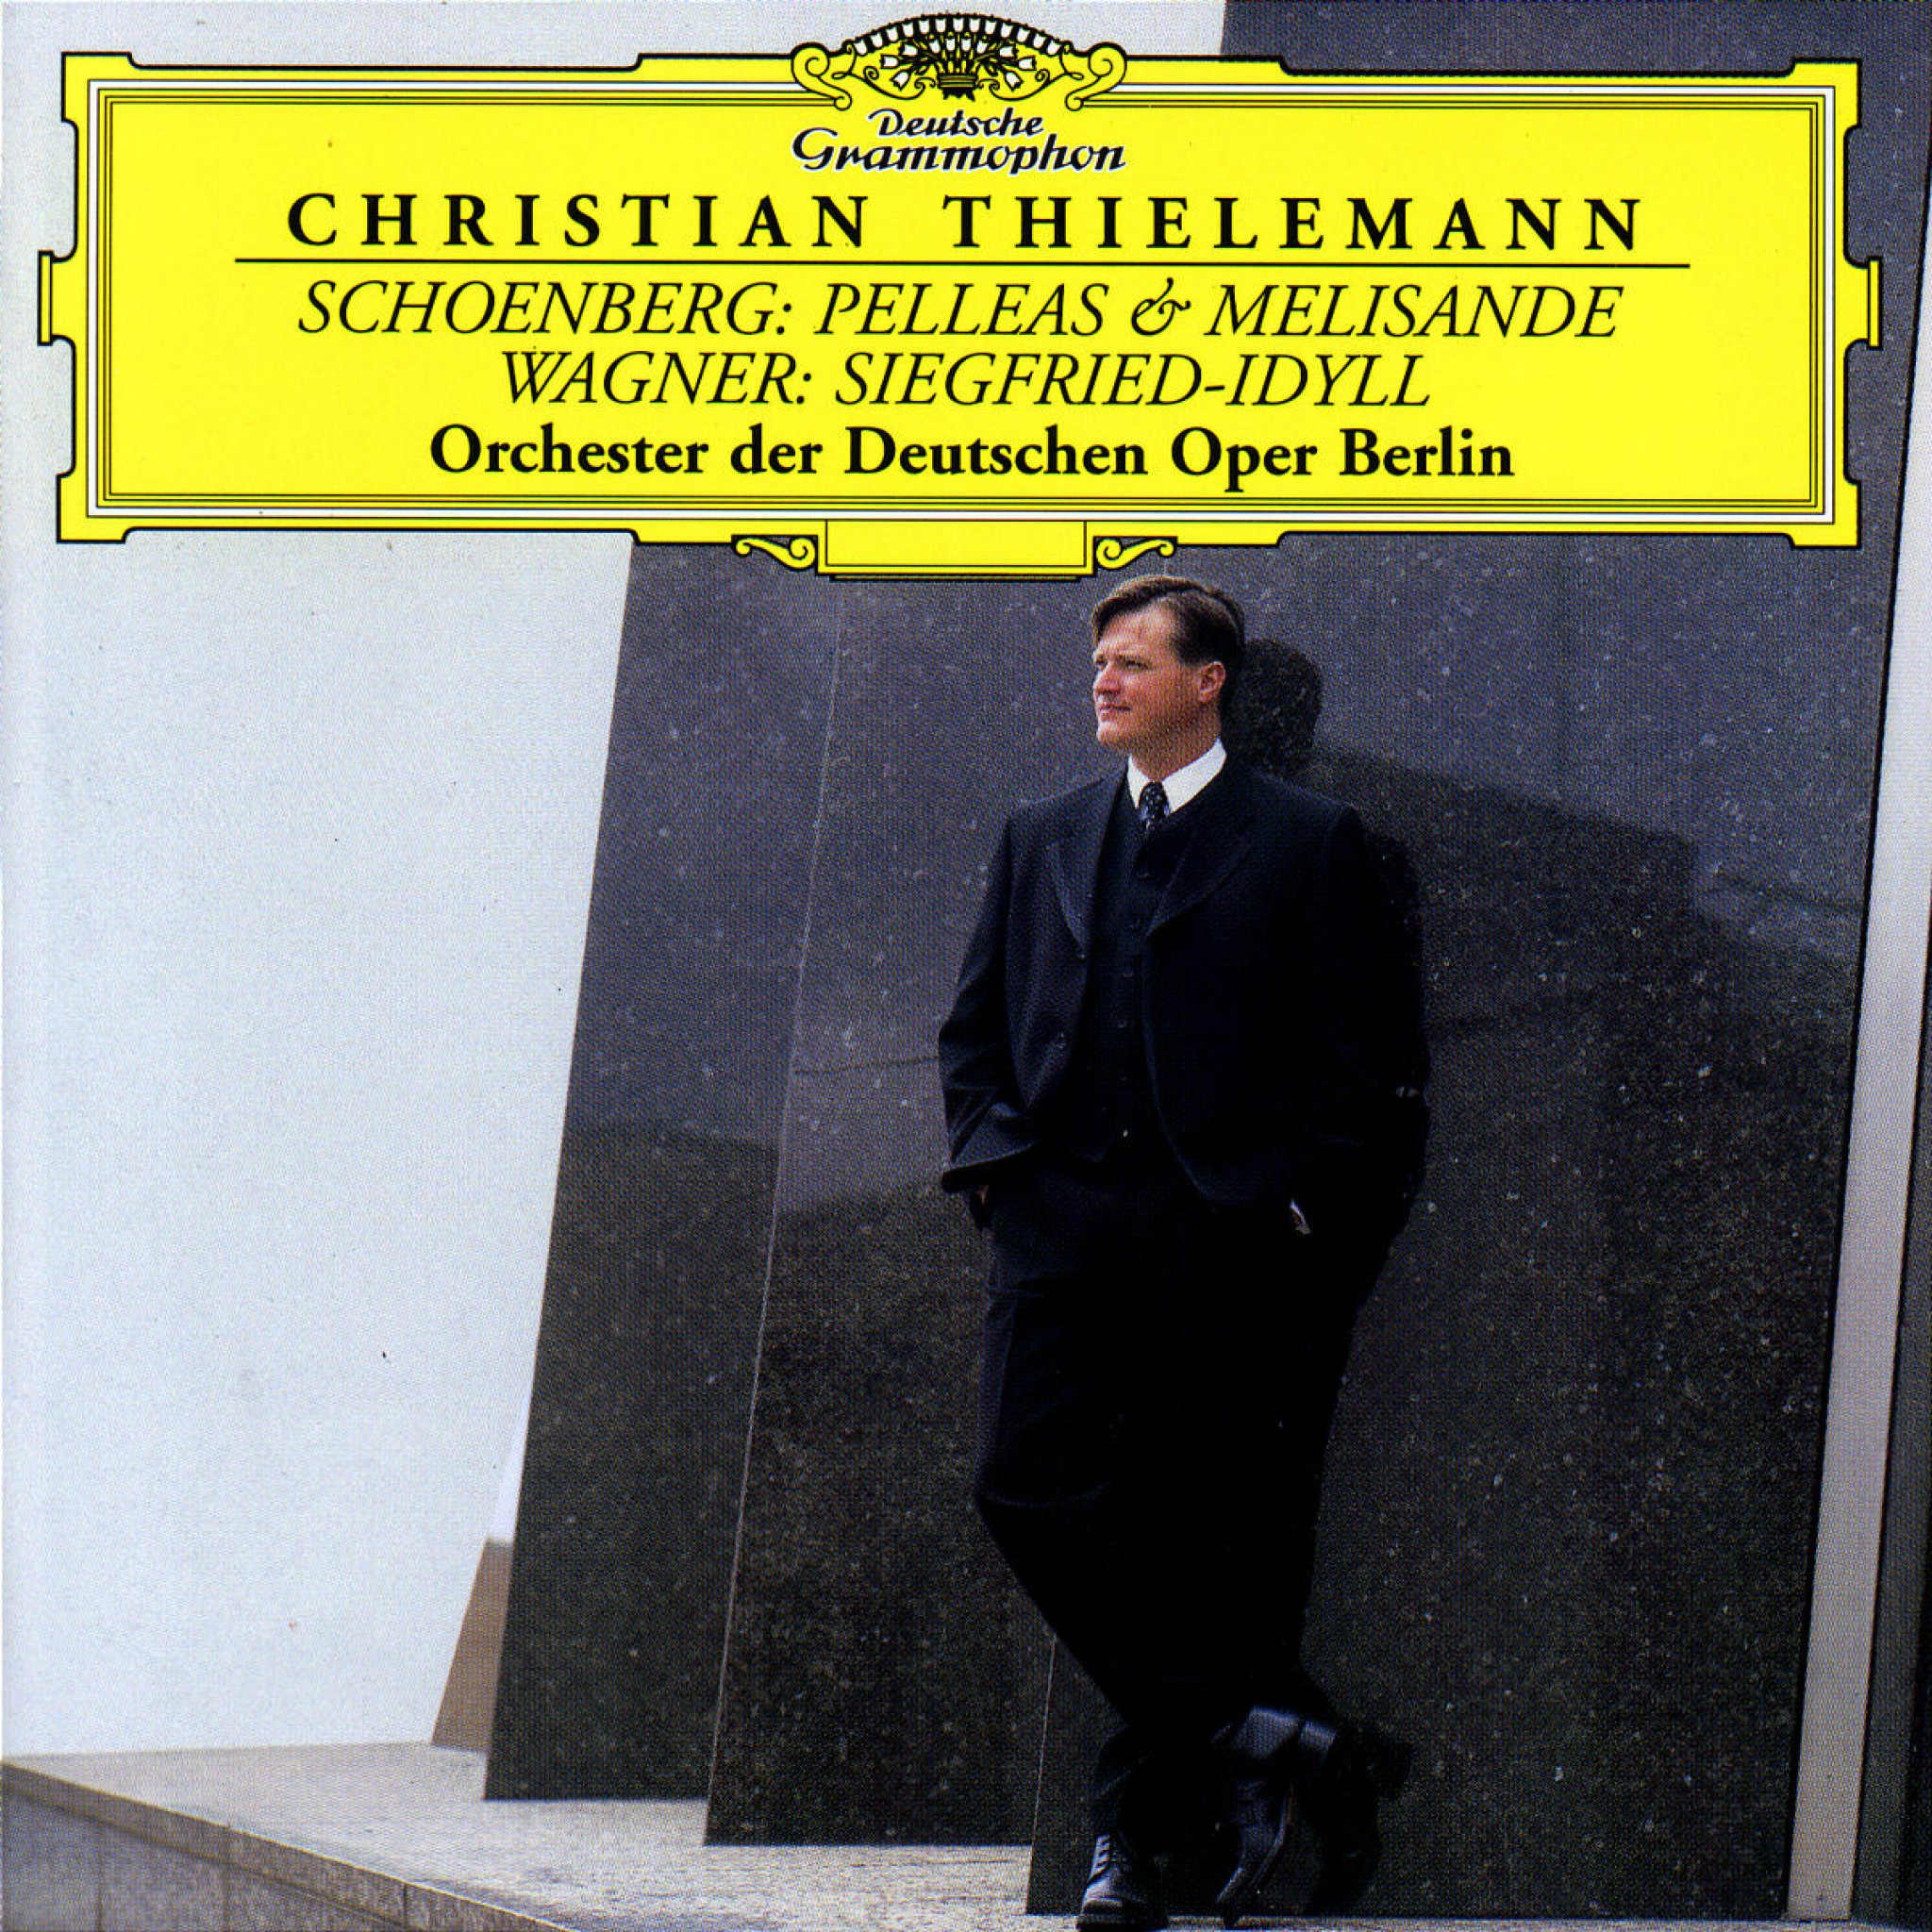 Christian Thielemann / Schoenberg, Wagner